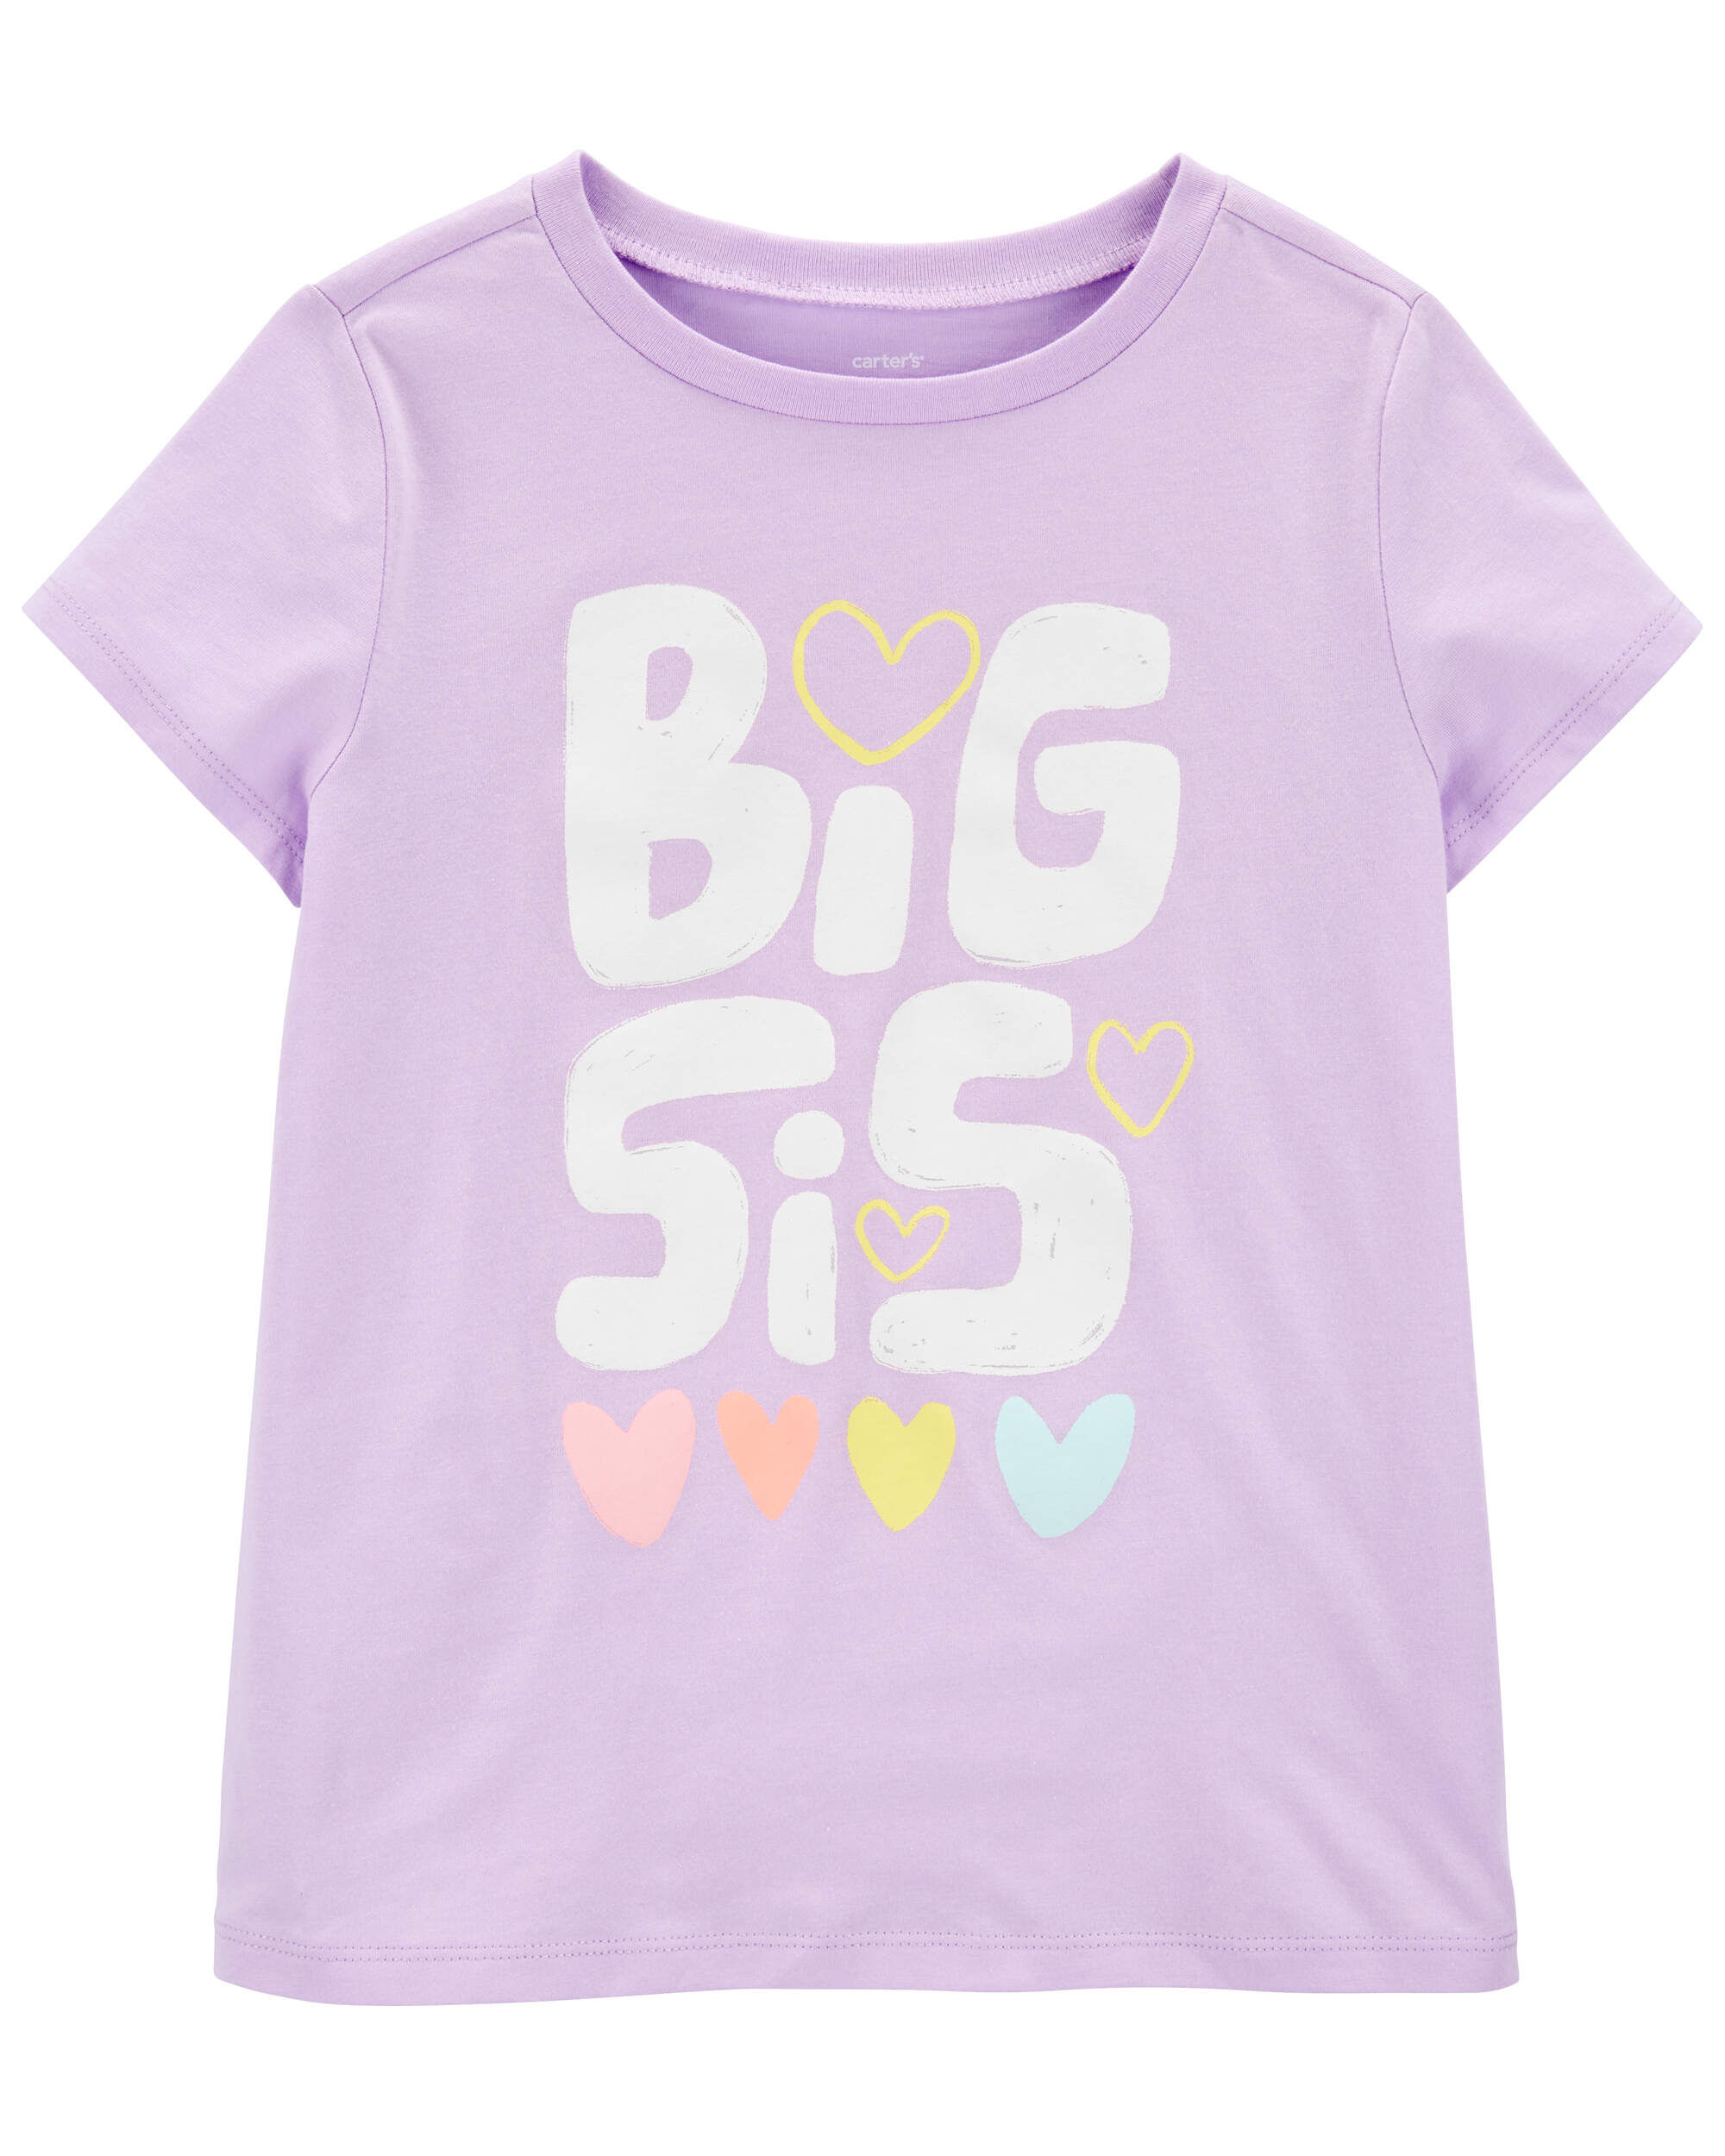 Детская футболка Carter's с надписью Big Sis Carter's